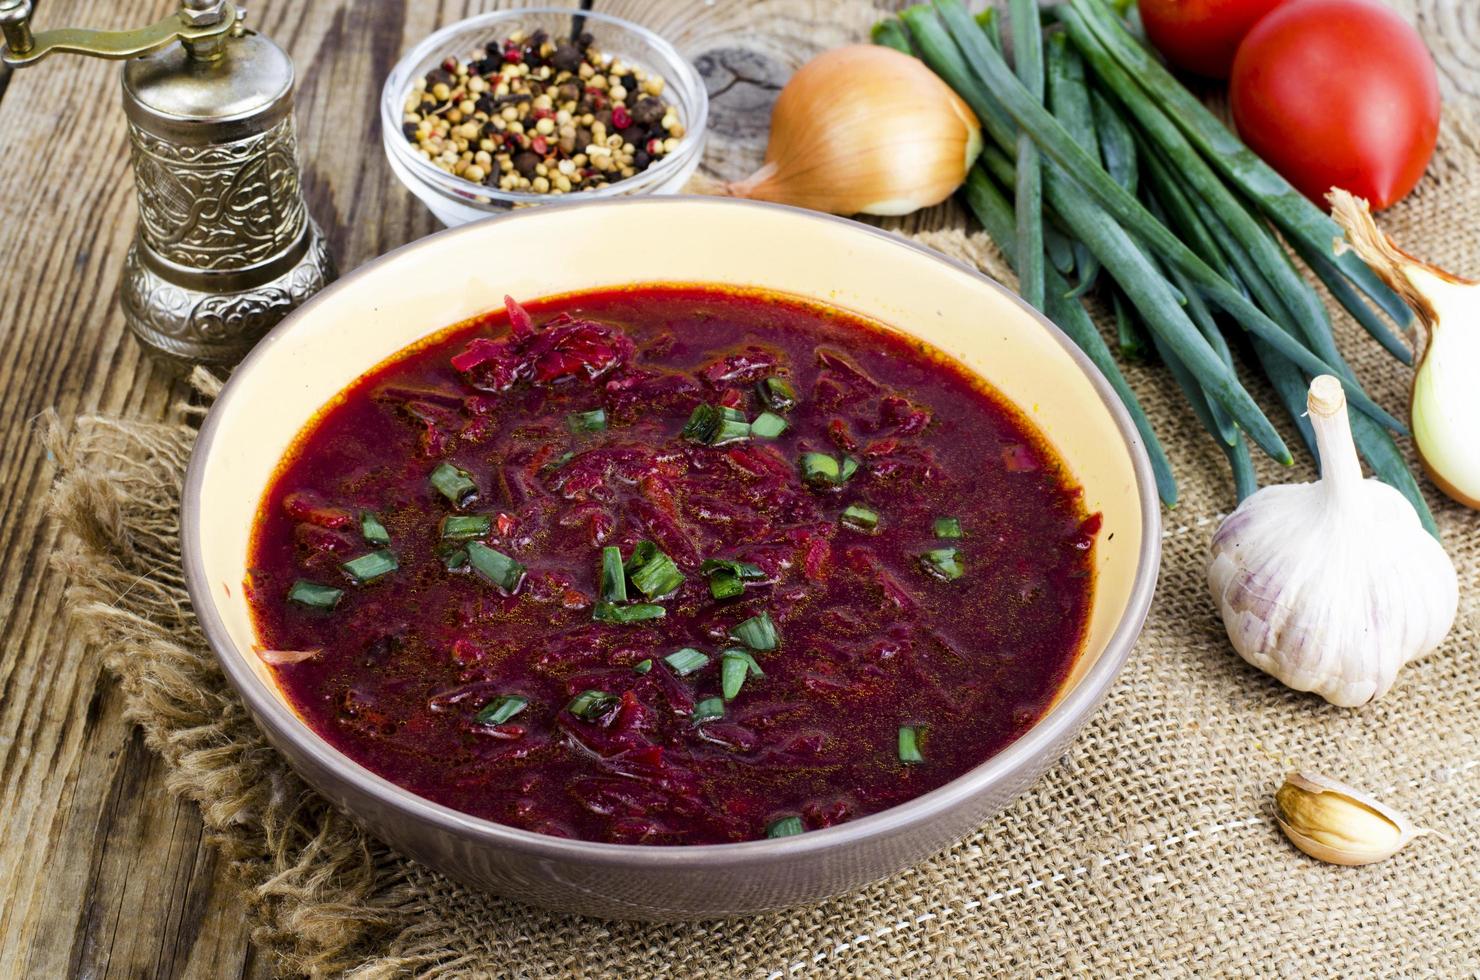 sopa de legumes vegetariana com beterraba vermelha. foto